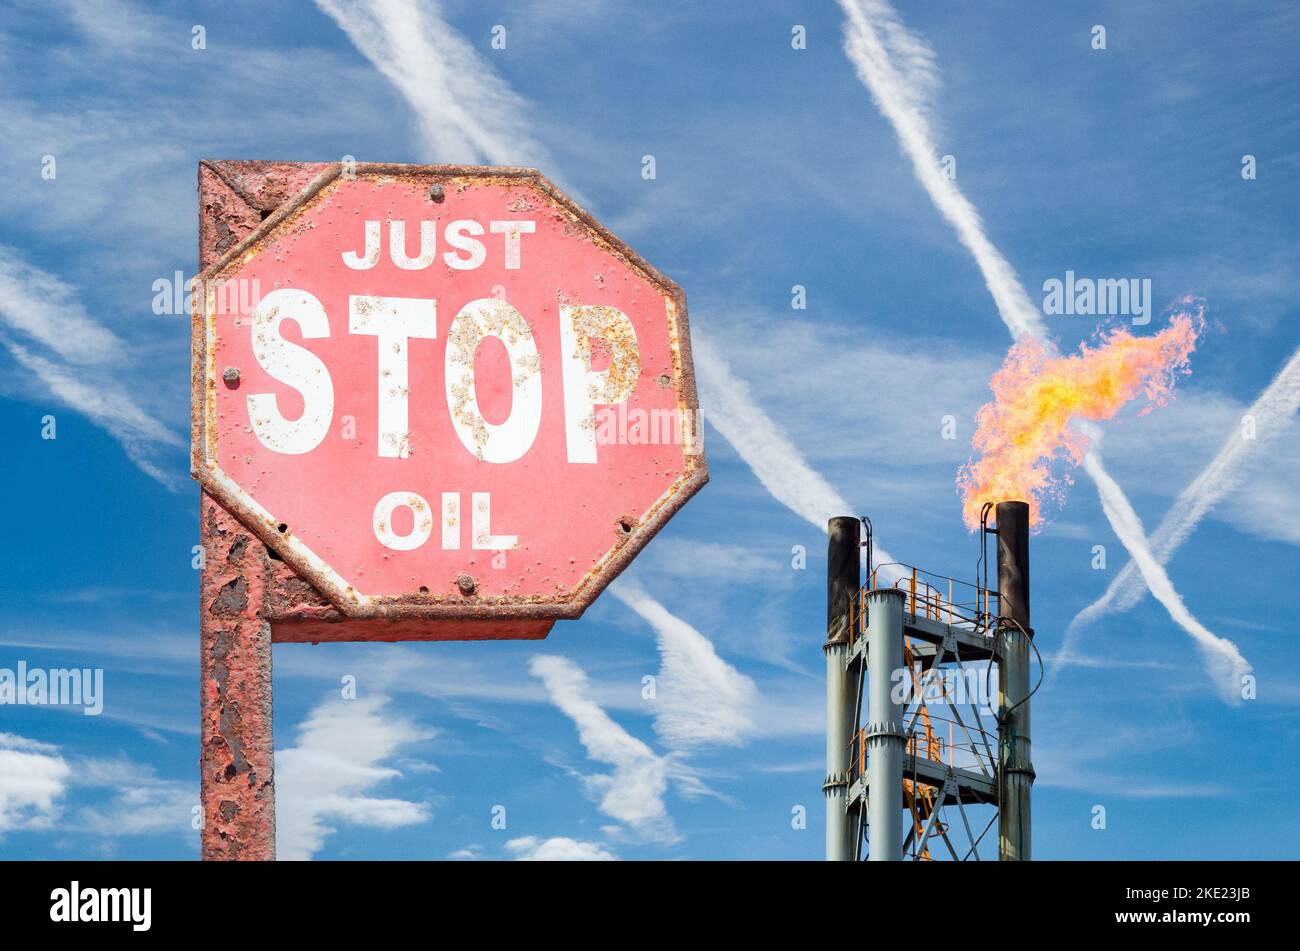 Halten Sie einfach das Bild des Ölkonzepts an. Raffineriegas-Flare stapeln sich mit Flugzeugkontrainern am Himmel. Globale Erwärmung, Klimawandel, Klimakrise, Netto-Null... Stockfoto